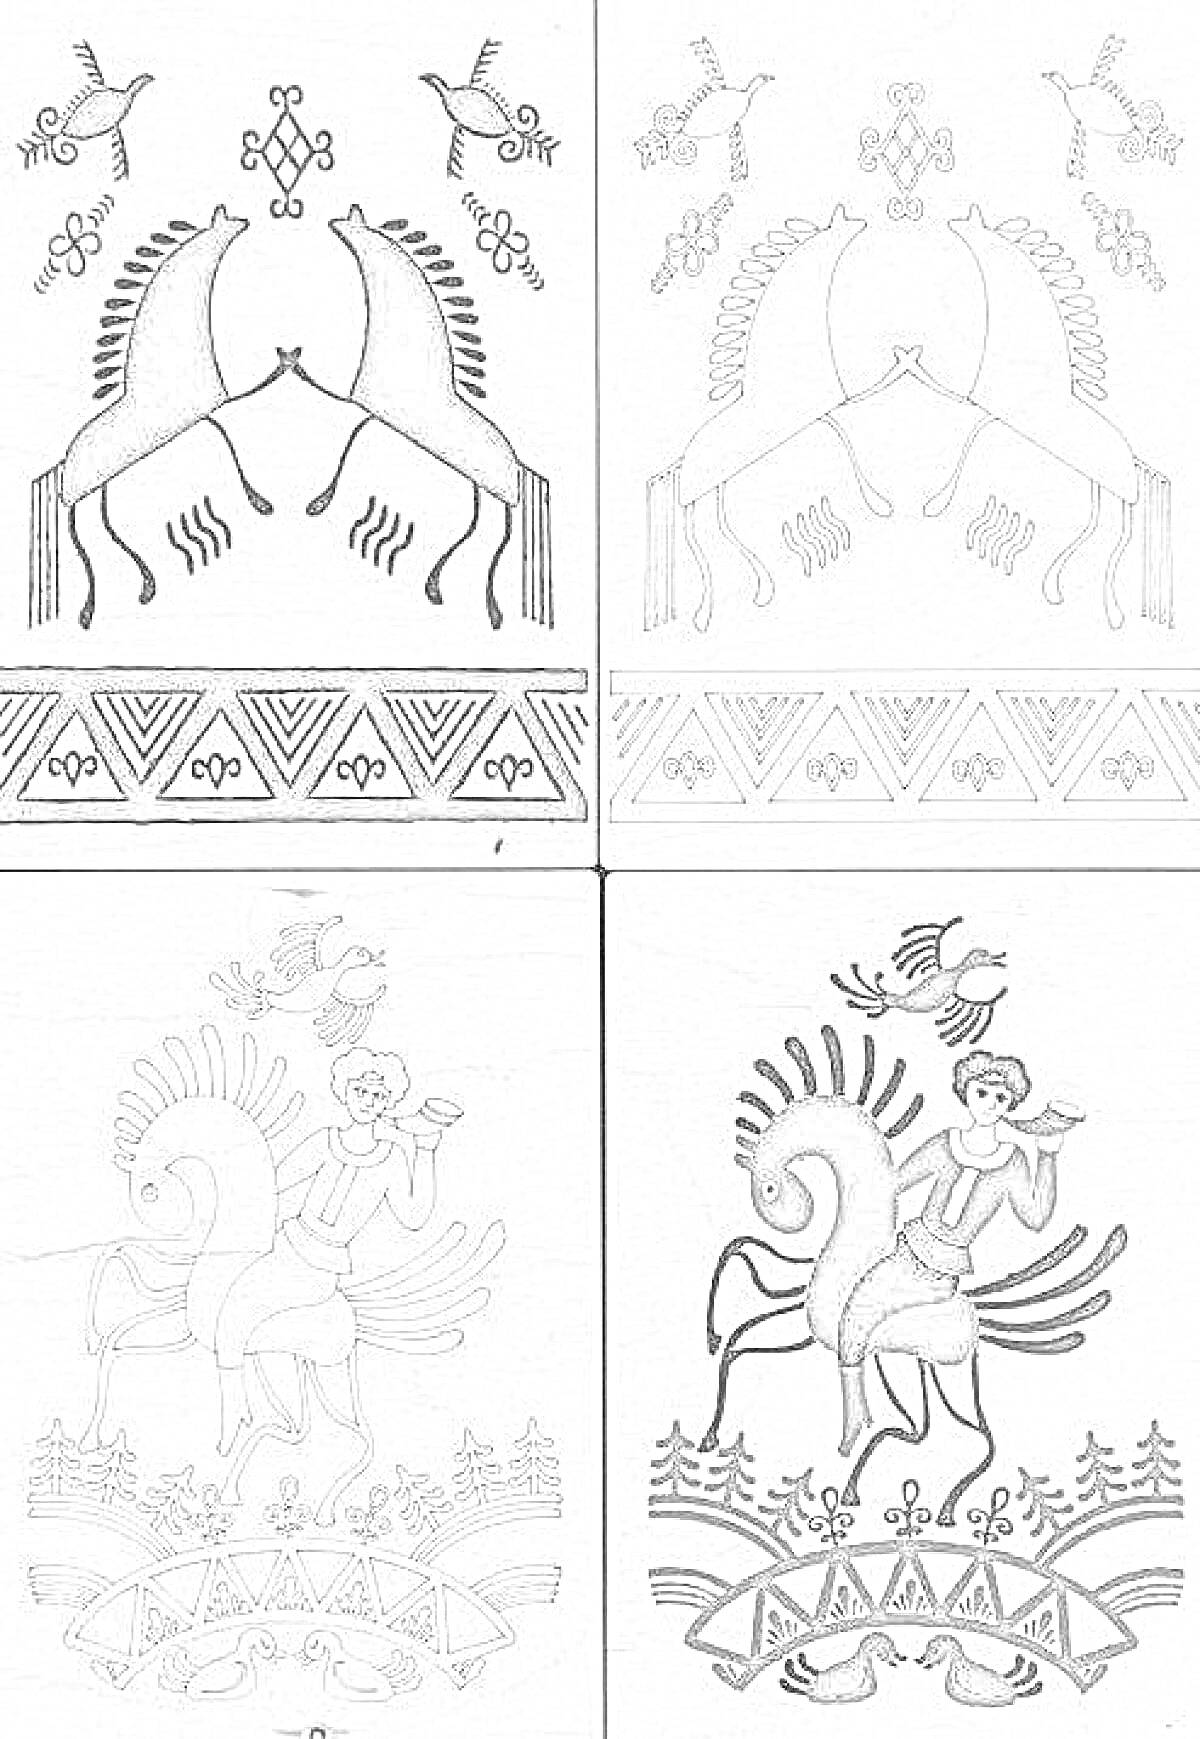 Четыре картинки с элементами мезенской росписи - Лошади и птицы, Лошади на фоне узоров, Всадник с птицами и узором, Всадник с лесом и узором